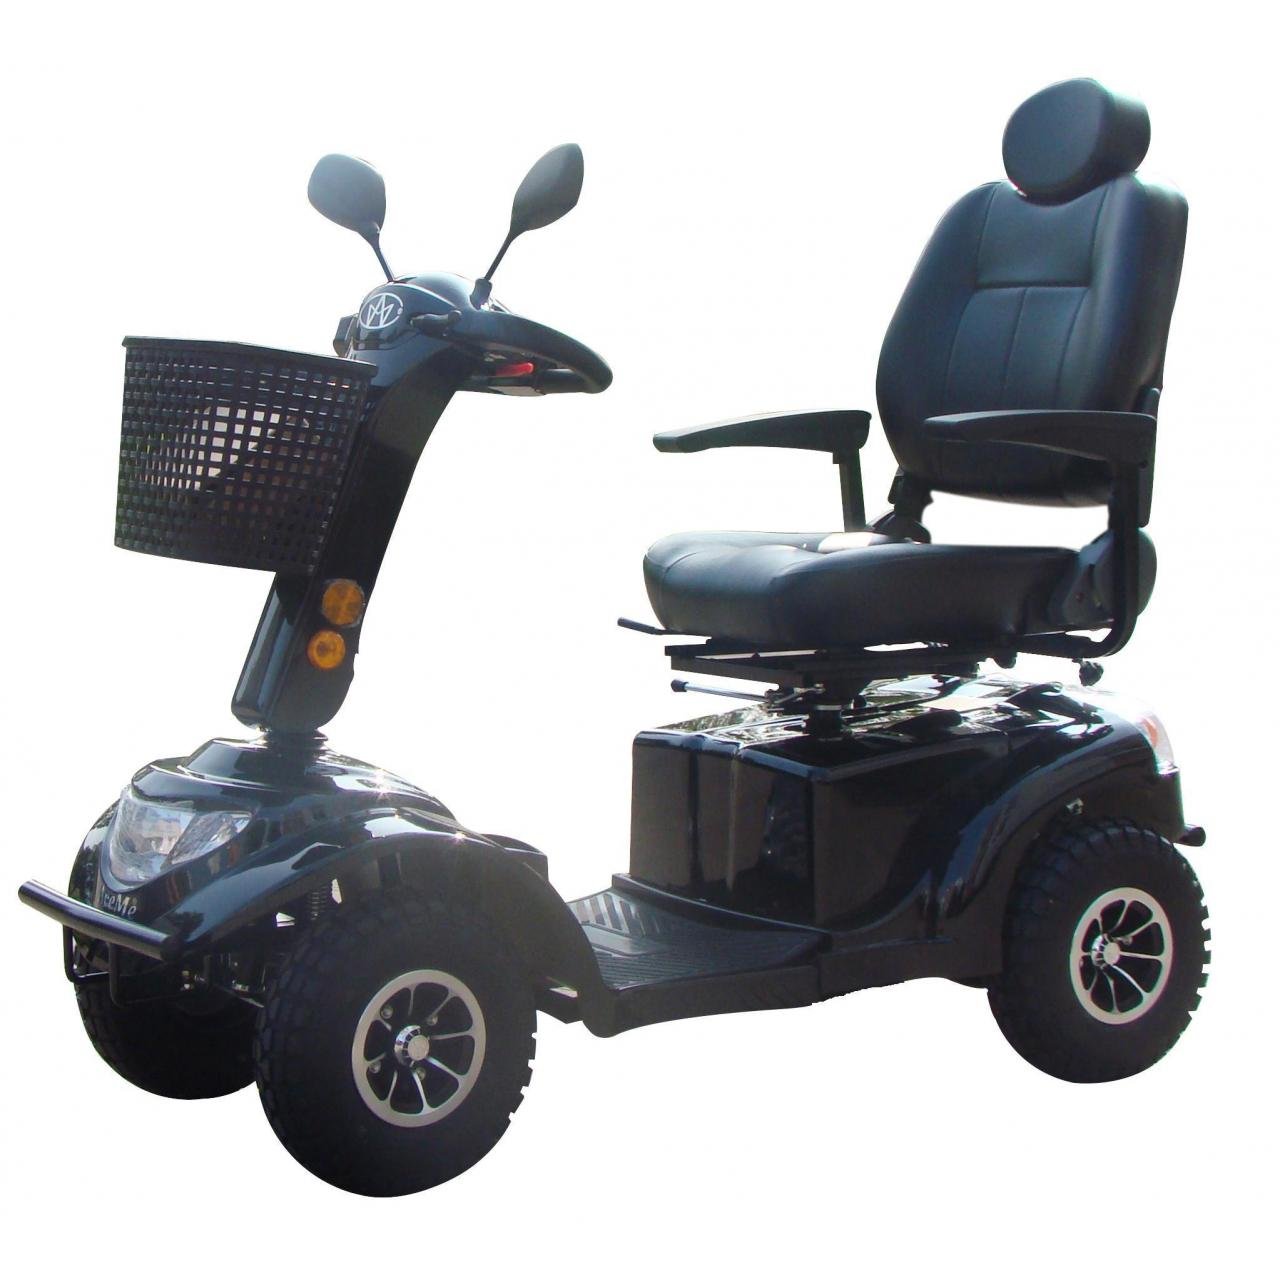 Скутер для дачи. Электроскутер для инвалидов модель fr510gdx leon4. Электроскутер МТ-40 для пожилых людей и инвалидов. Скутер электрический Midilli s 1200 четырехколесный. Кресло коляска скутер МТ 100.